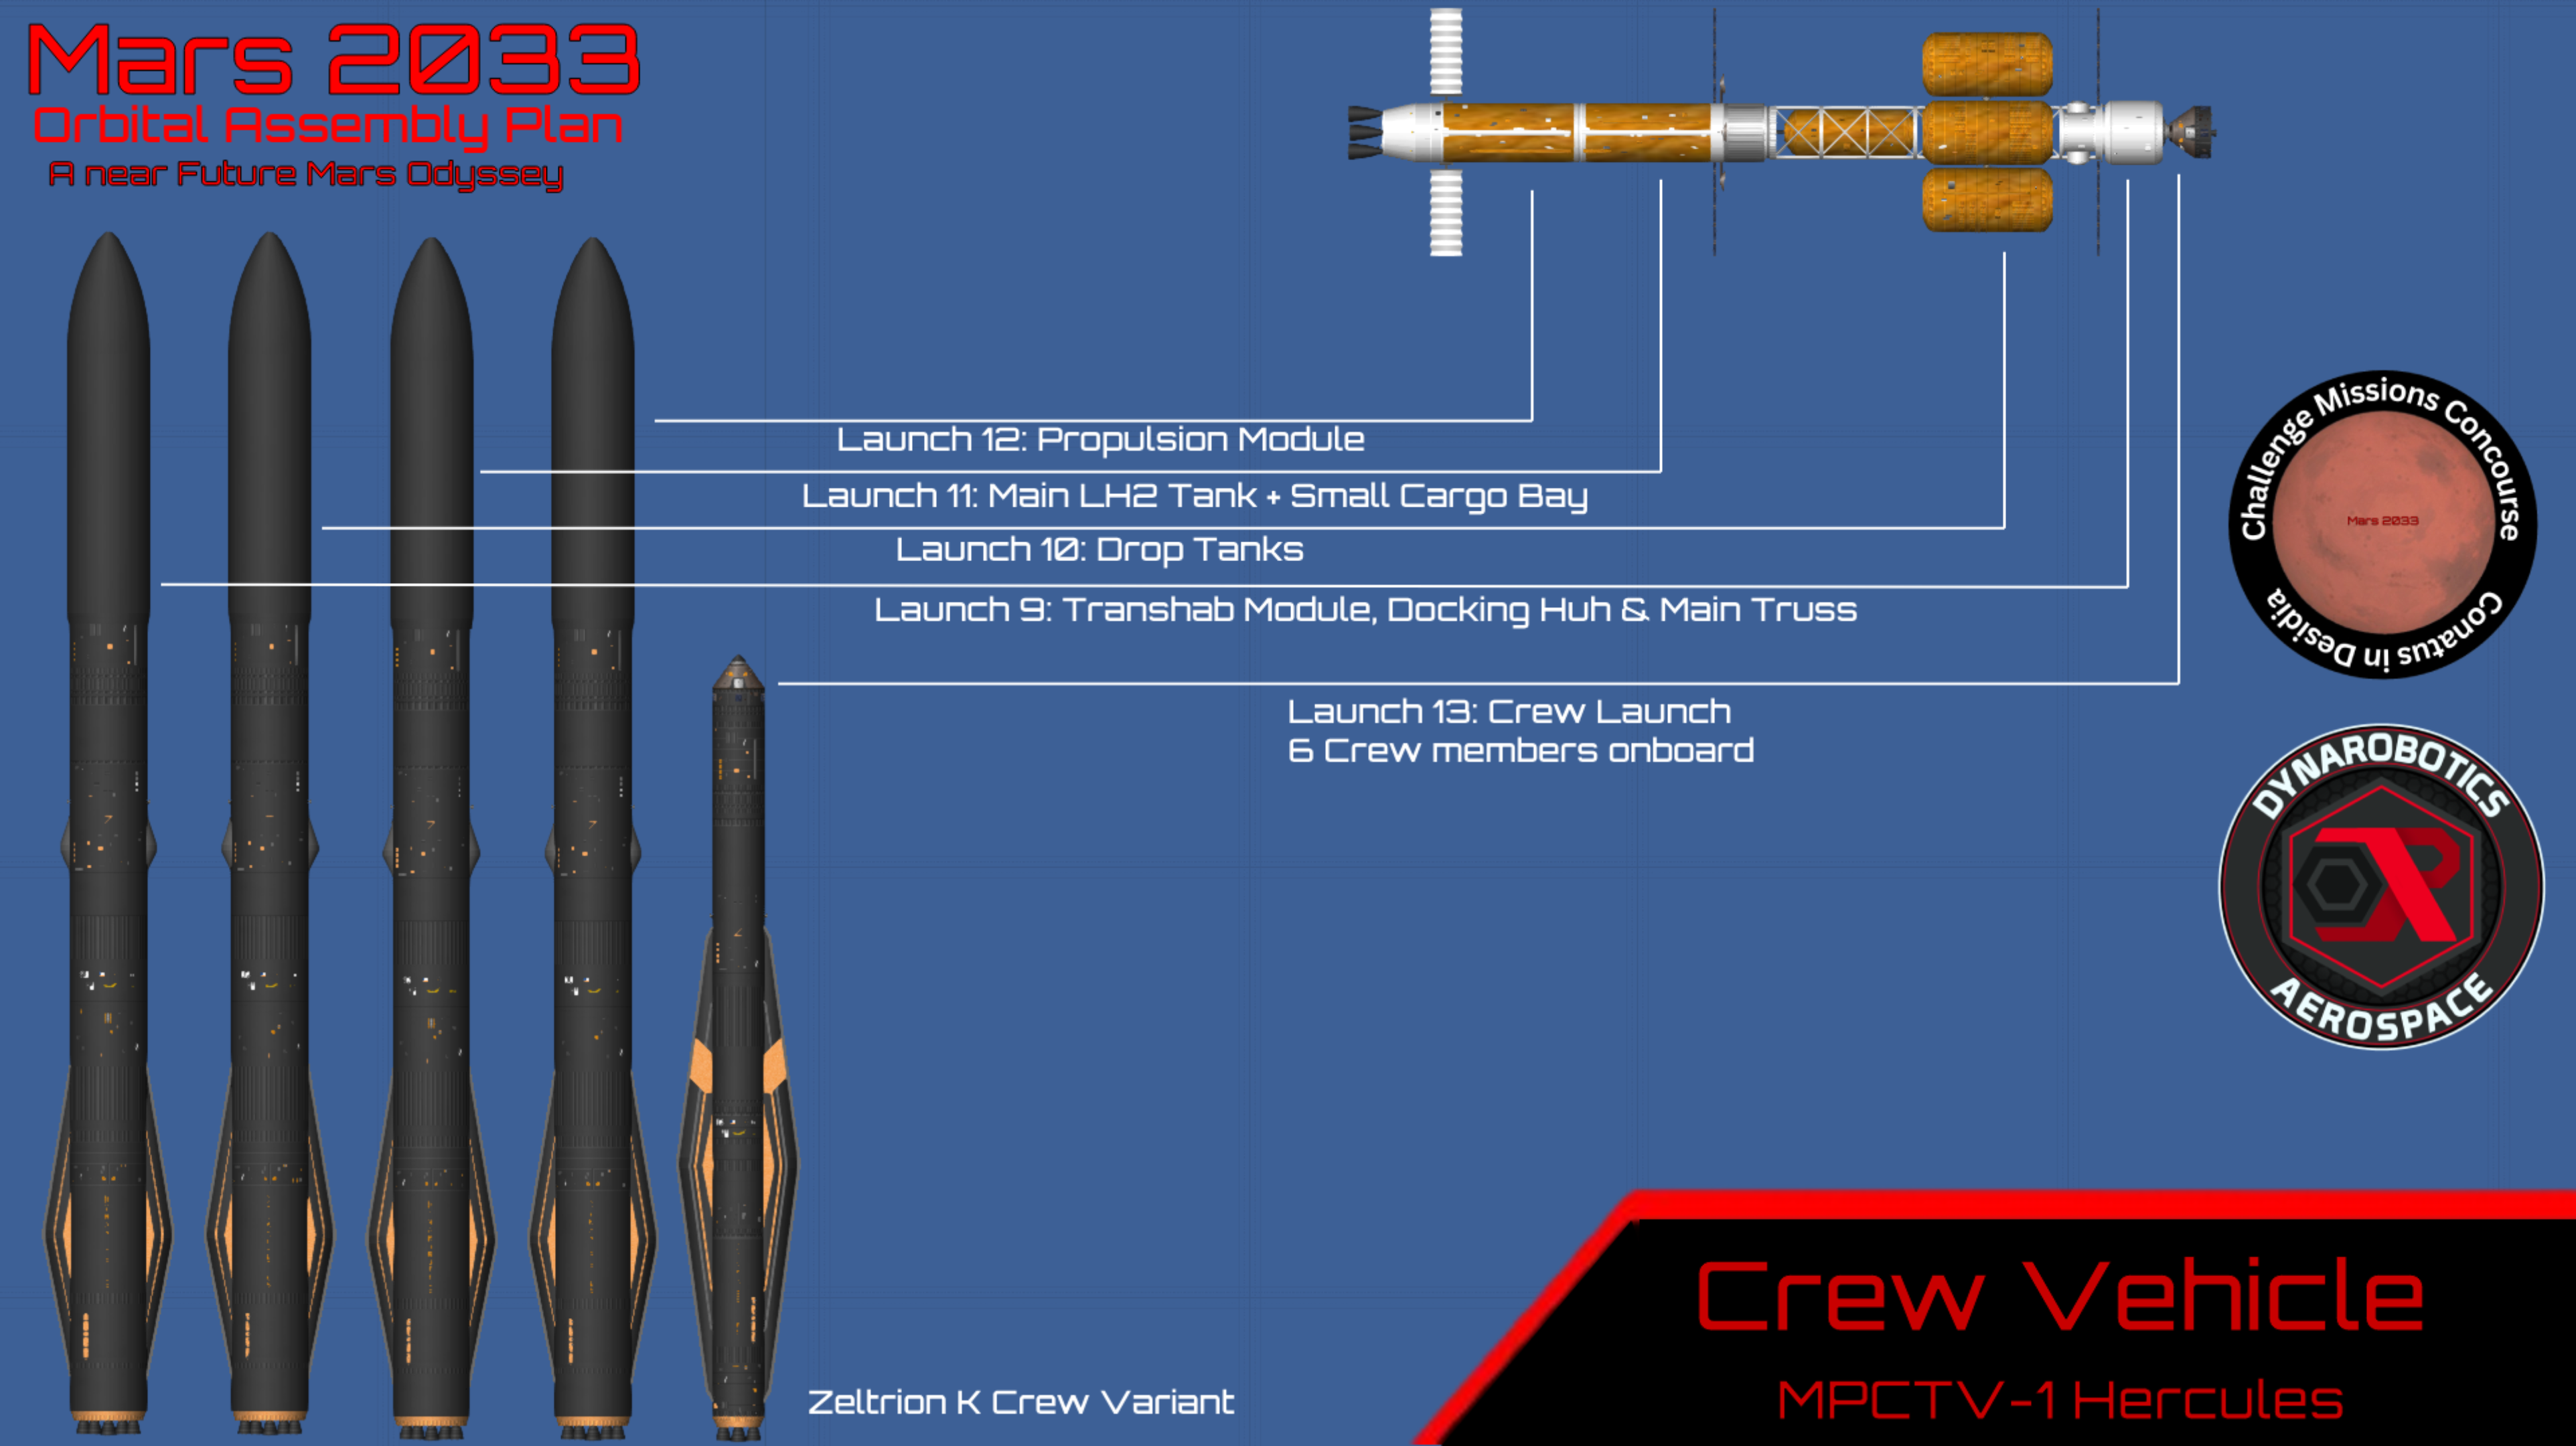 Mars_2033_Crew_Vehicle_Plan.png